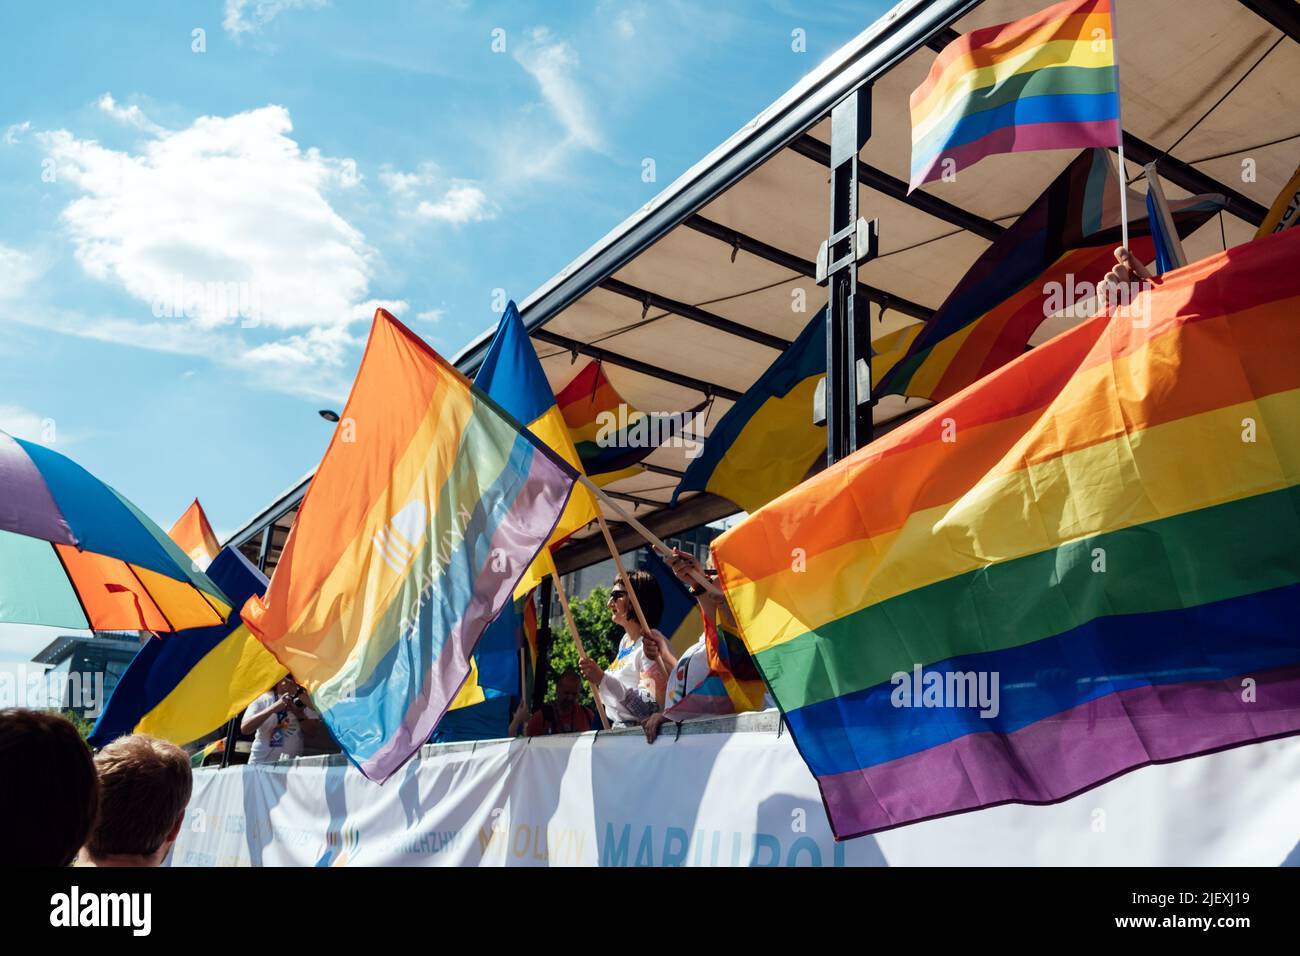 Polnische, ukrainische LGBT-Paraden in Warschau. Aktivisten marschieren für LGBTQ-Rechte. Kyiv Pride. Warschau, Polen, 25. Juni 2022. Stockfoto